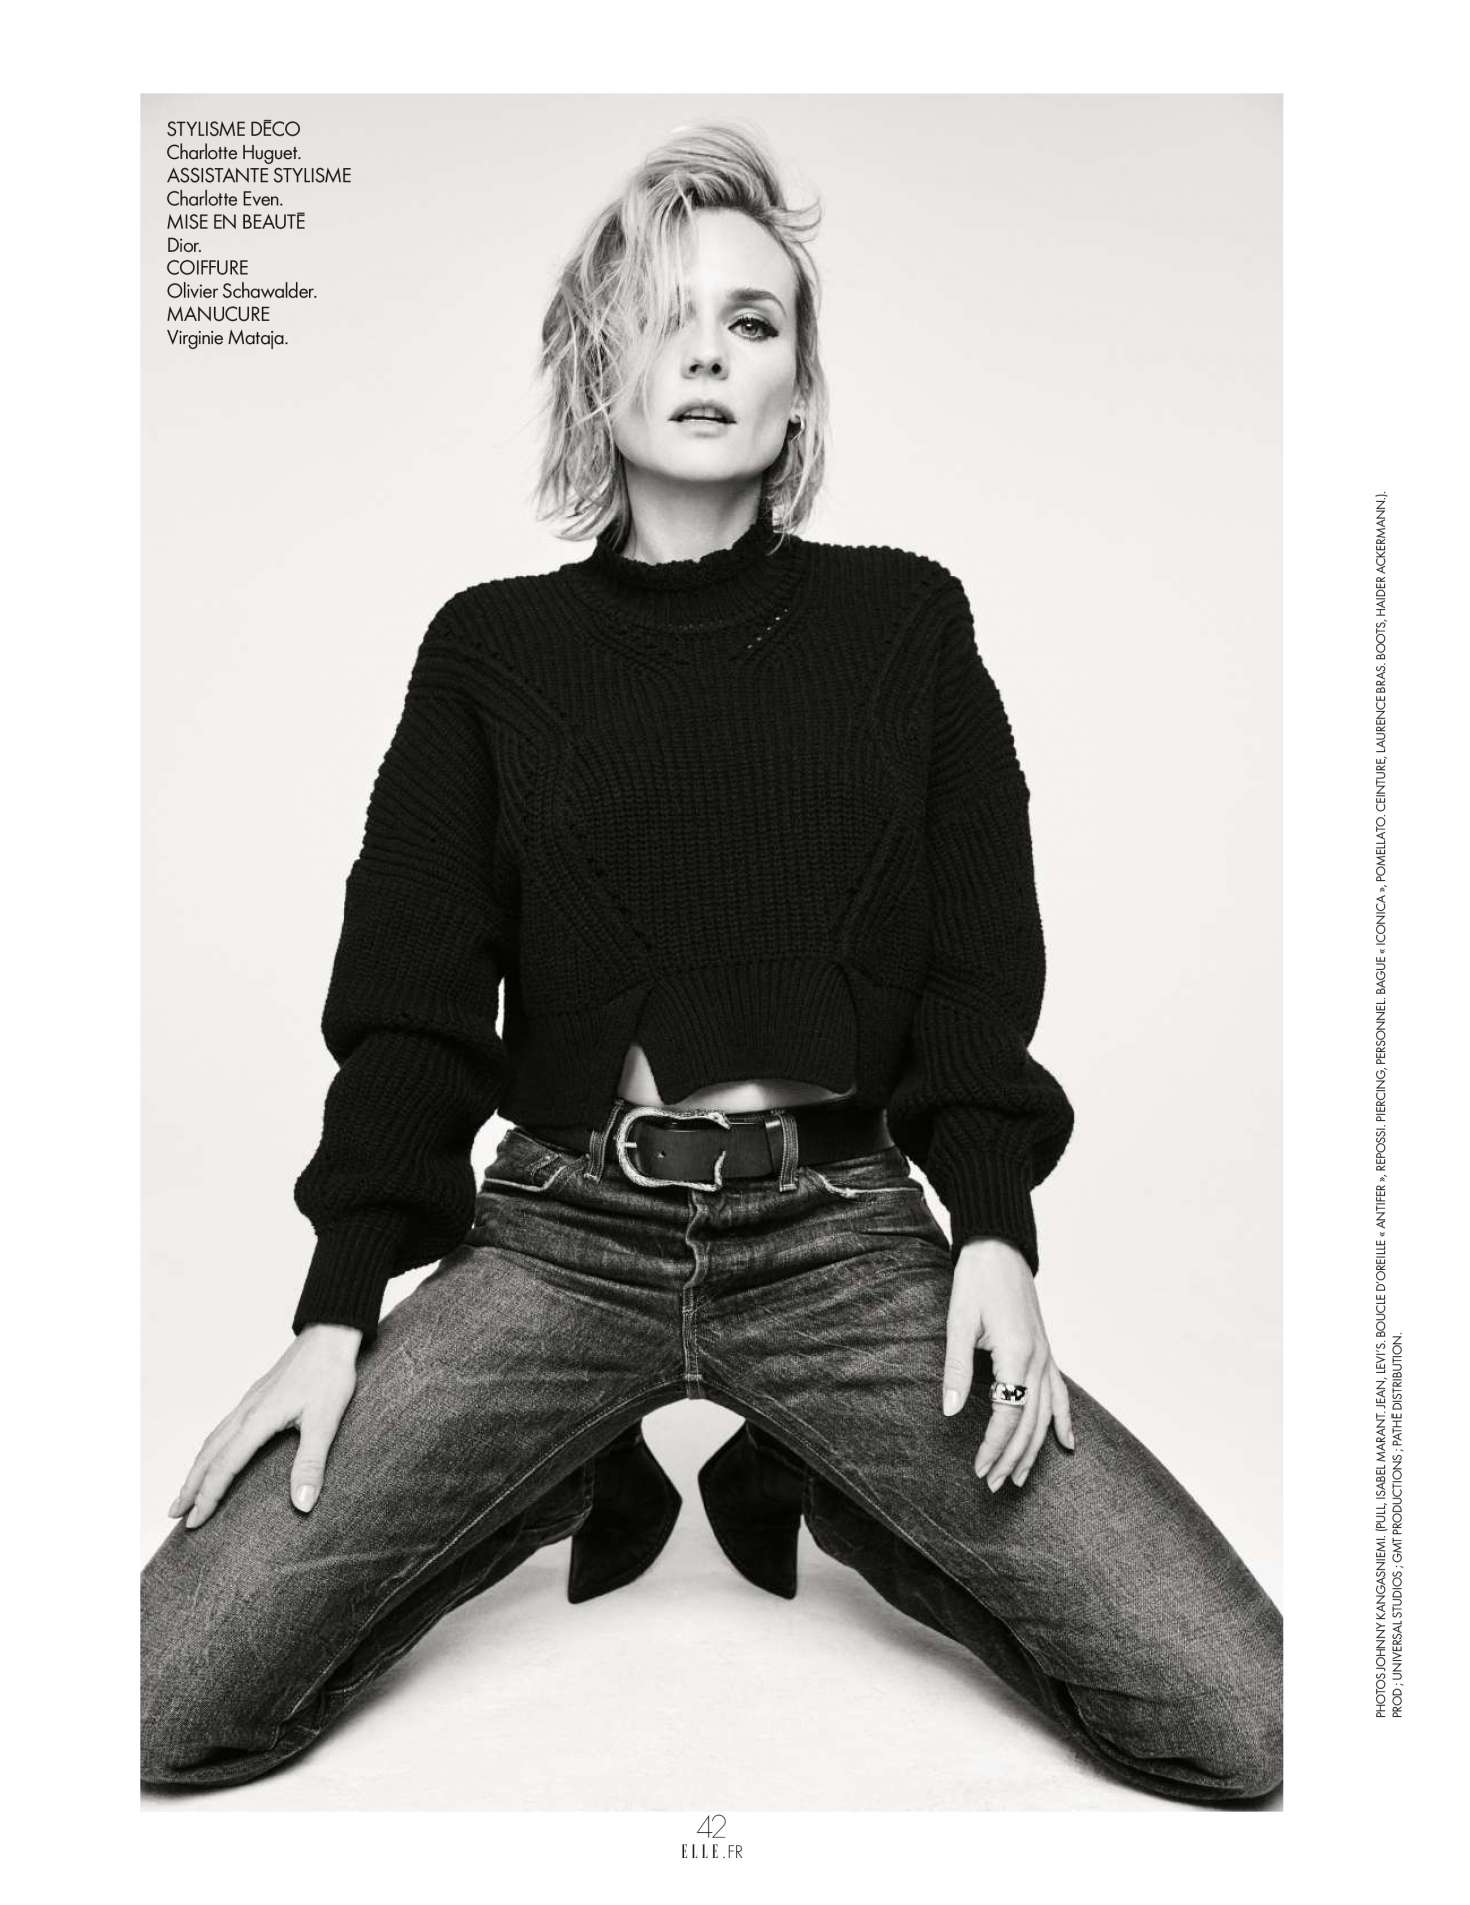 Diane Kruger - Elle France Magazine (January 2018)